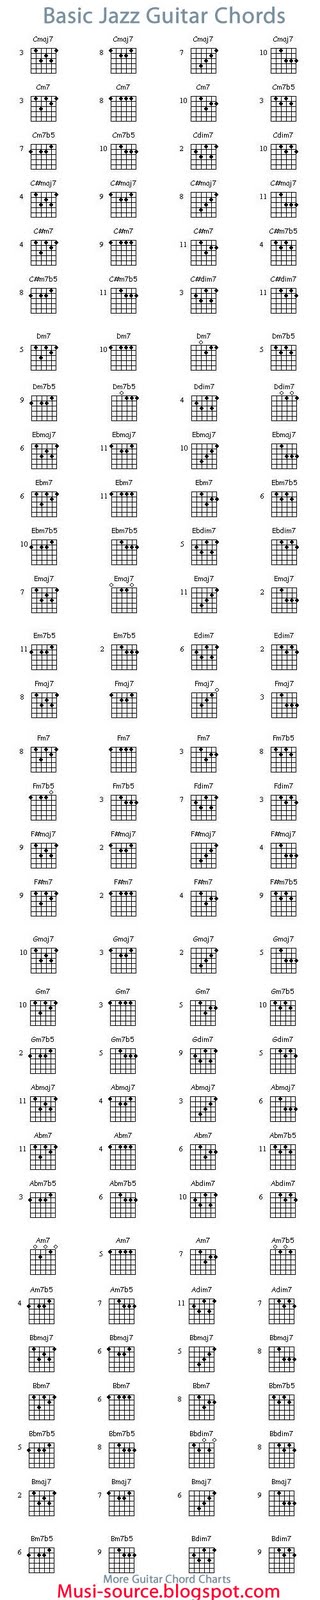 Wonderbaarlijk Musicians Resources: Basic Jazz Guitar Chord Chart RW-67